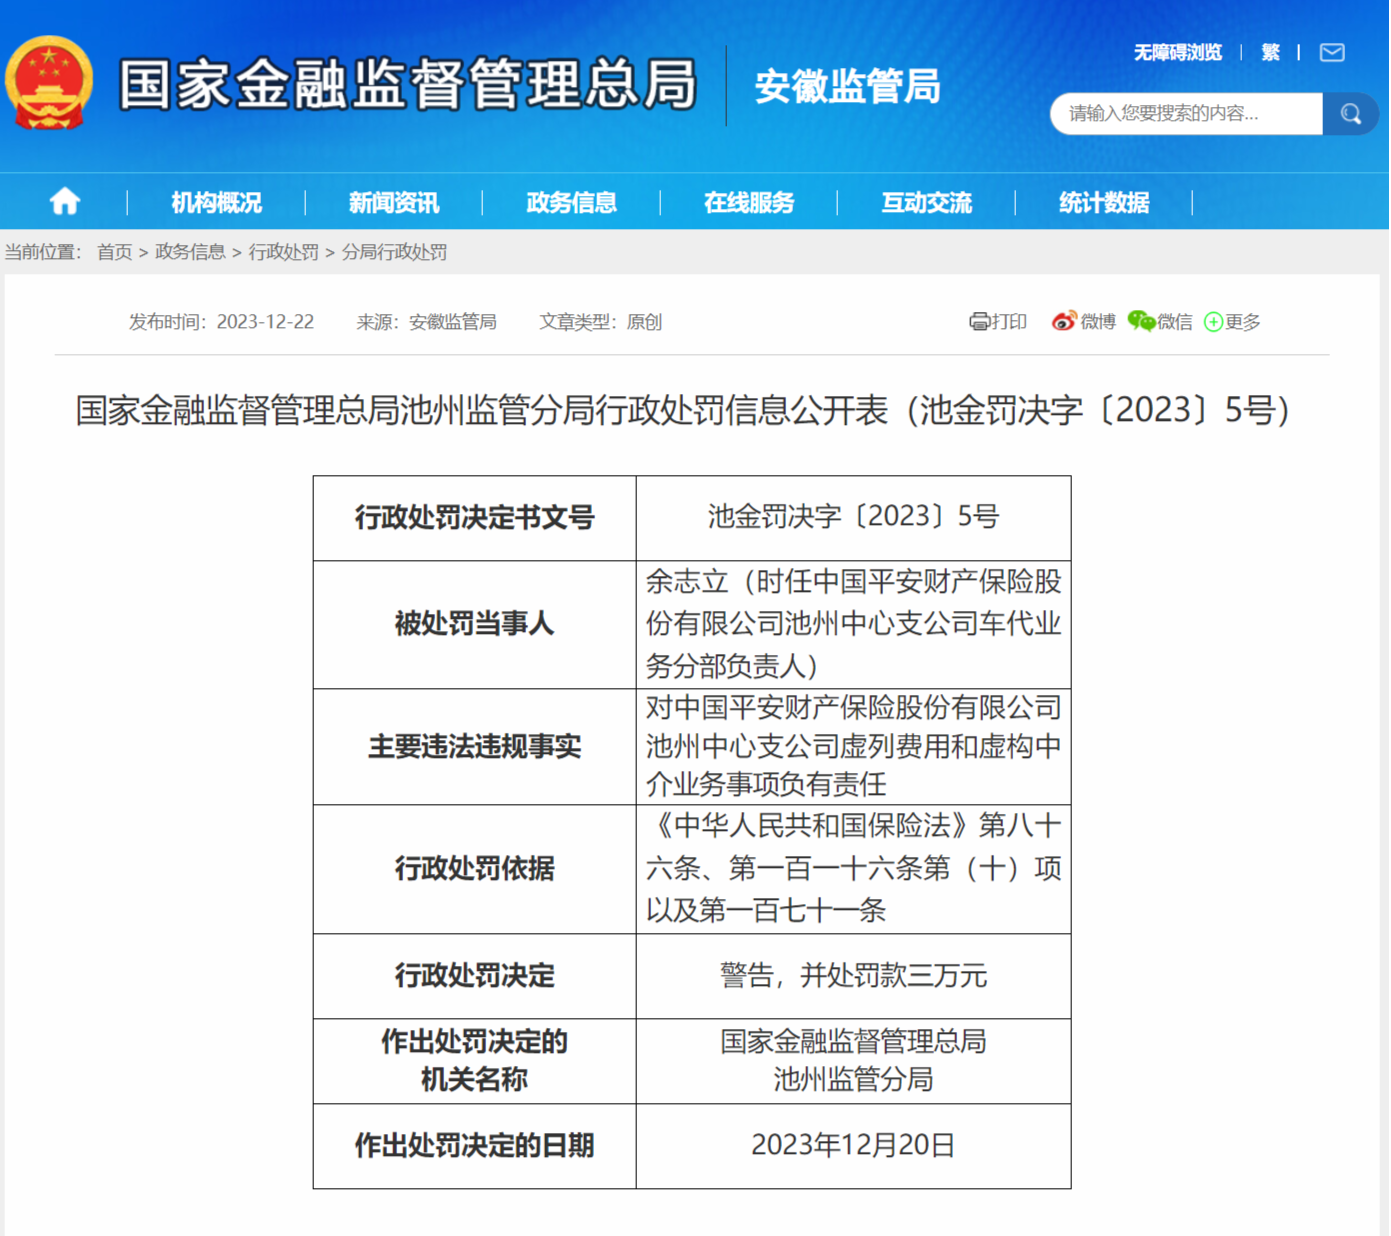 虚列费用 虚构中介业务 中国平安财险池州中心支公司被罚30万元